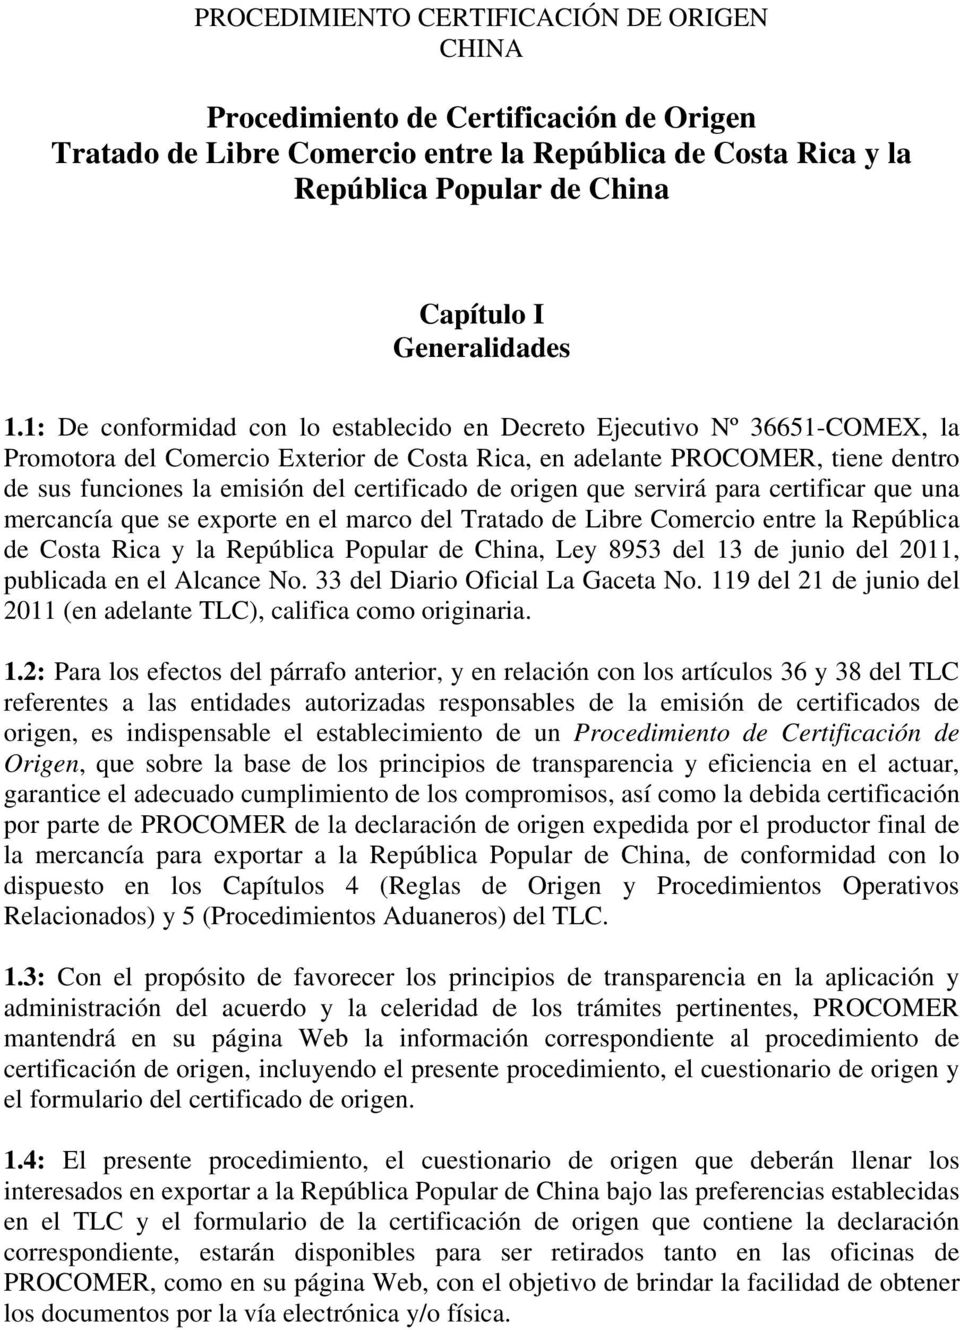 certificado de origen que servirá para certificar que una mercancía que se exporte en el marco del Tratado de Libre Comercio entre la República de Costa Rica y la República Popular de China, Ley 8953